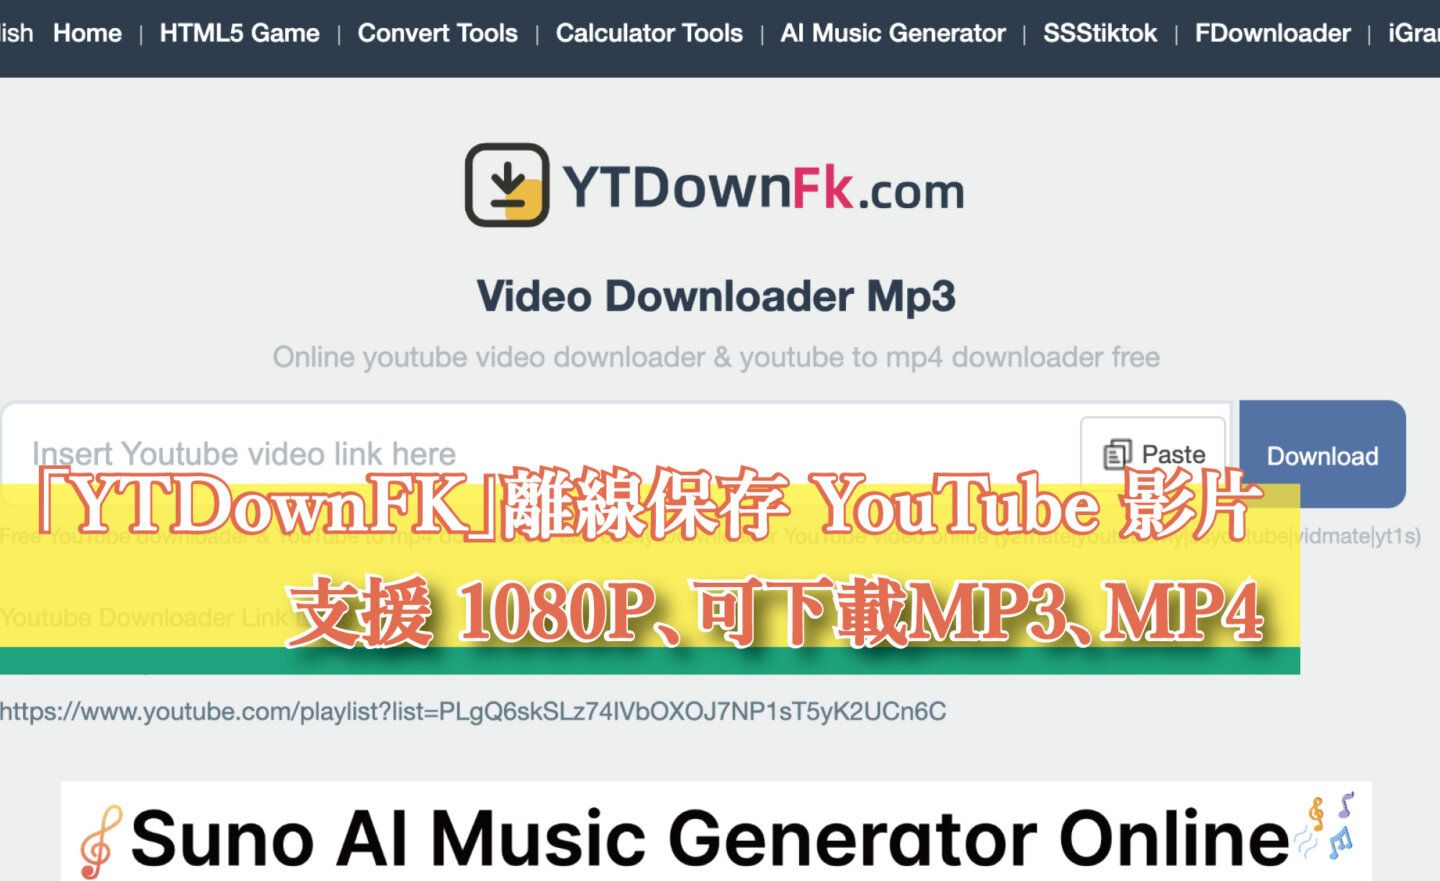 【免費】「YTDownFK」快速離線保存 YouTube 影片，支援 1080P、可下載MP3、MP4